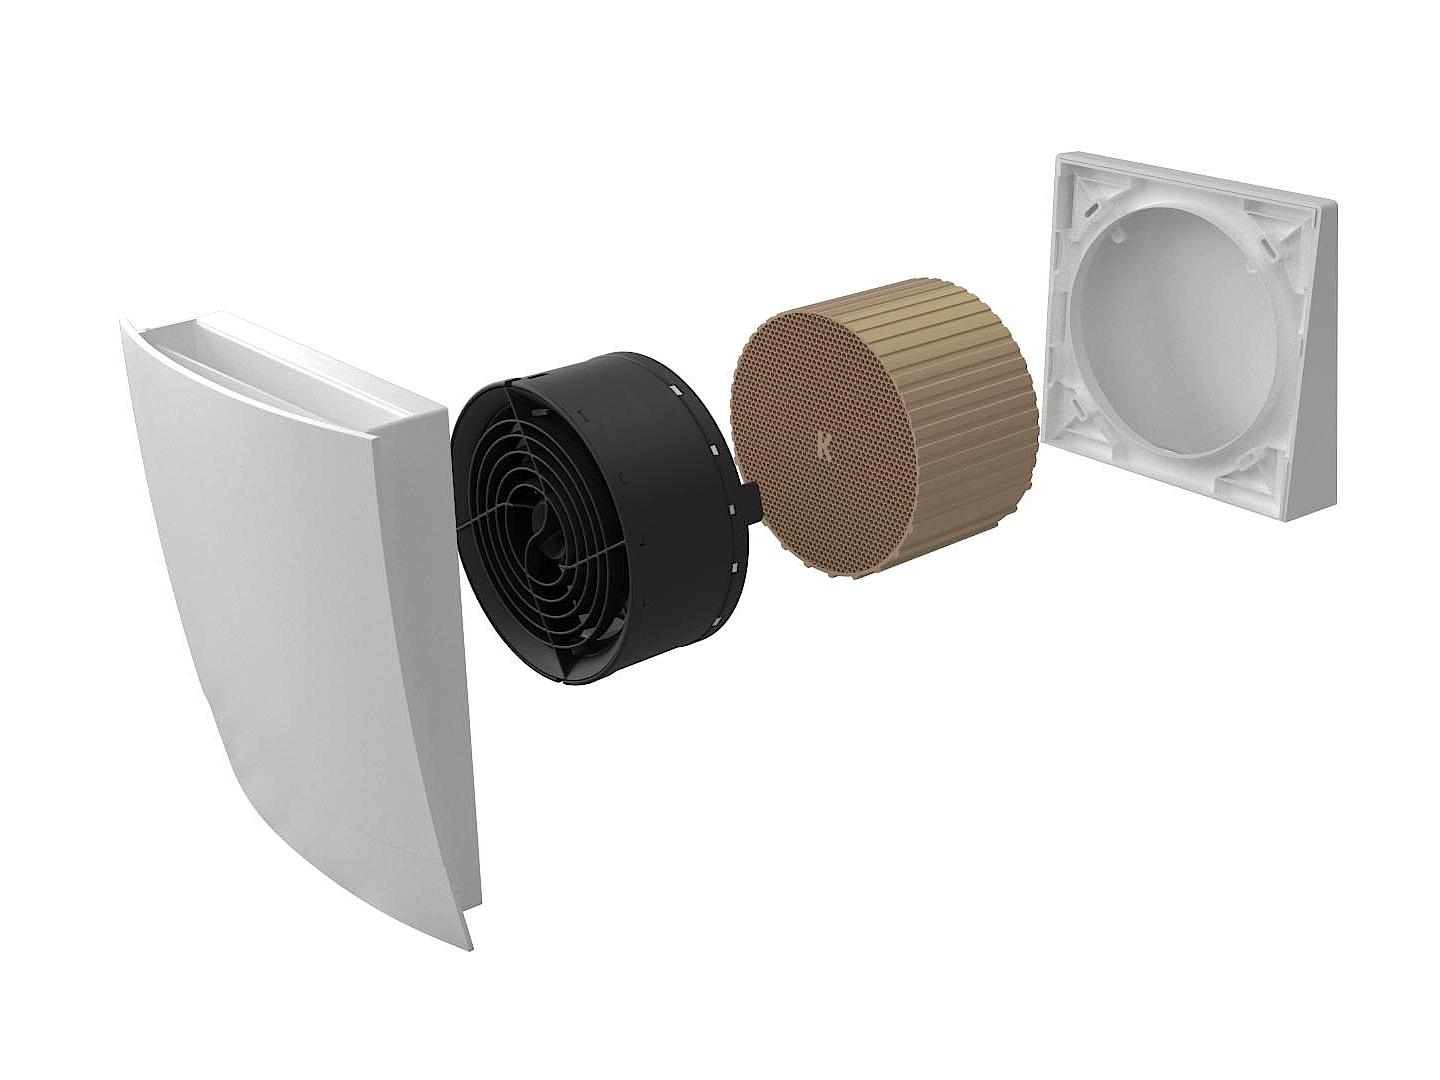 Kyvadlový ventilátor x-well D13 – pro větrání a odvzdušnění bytů a domů.